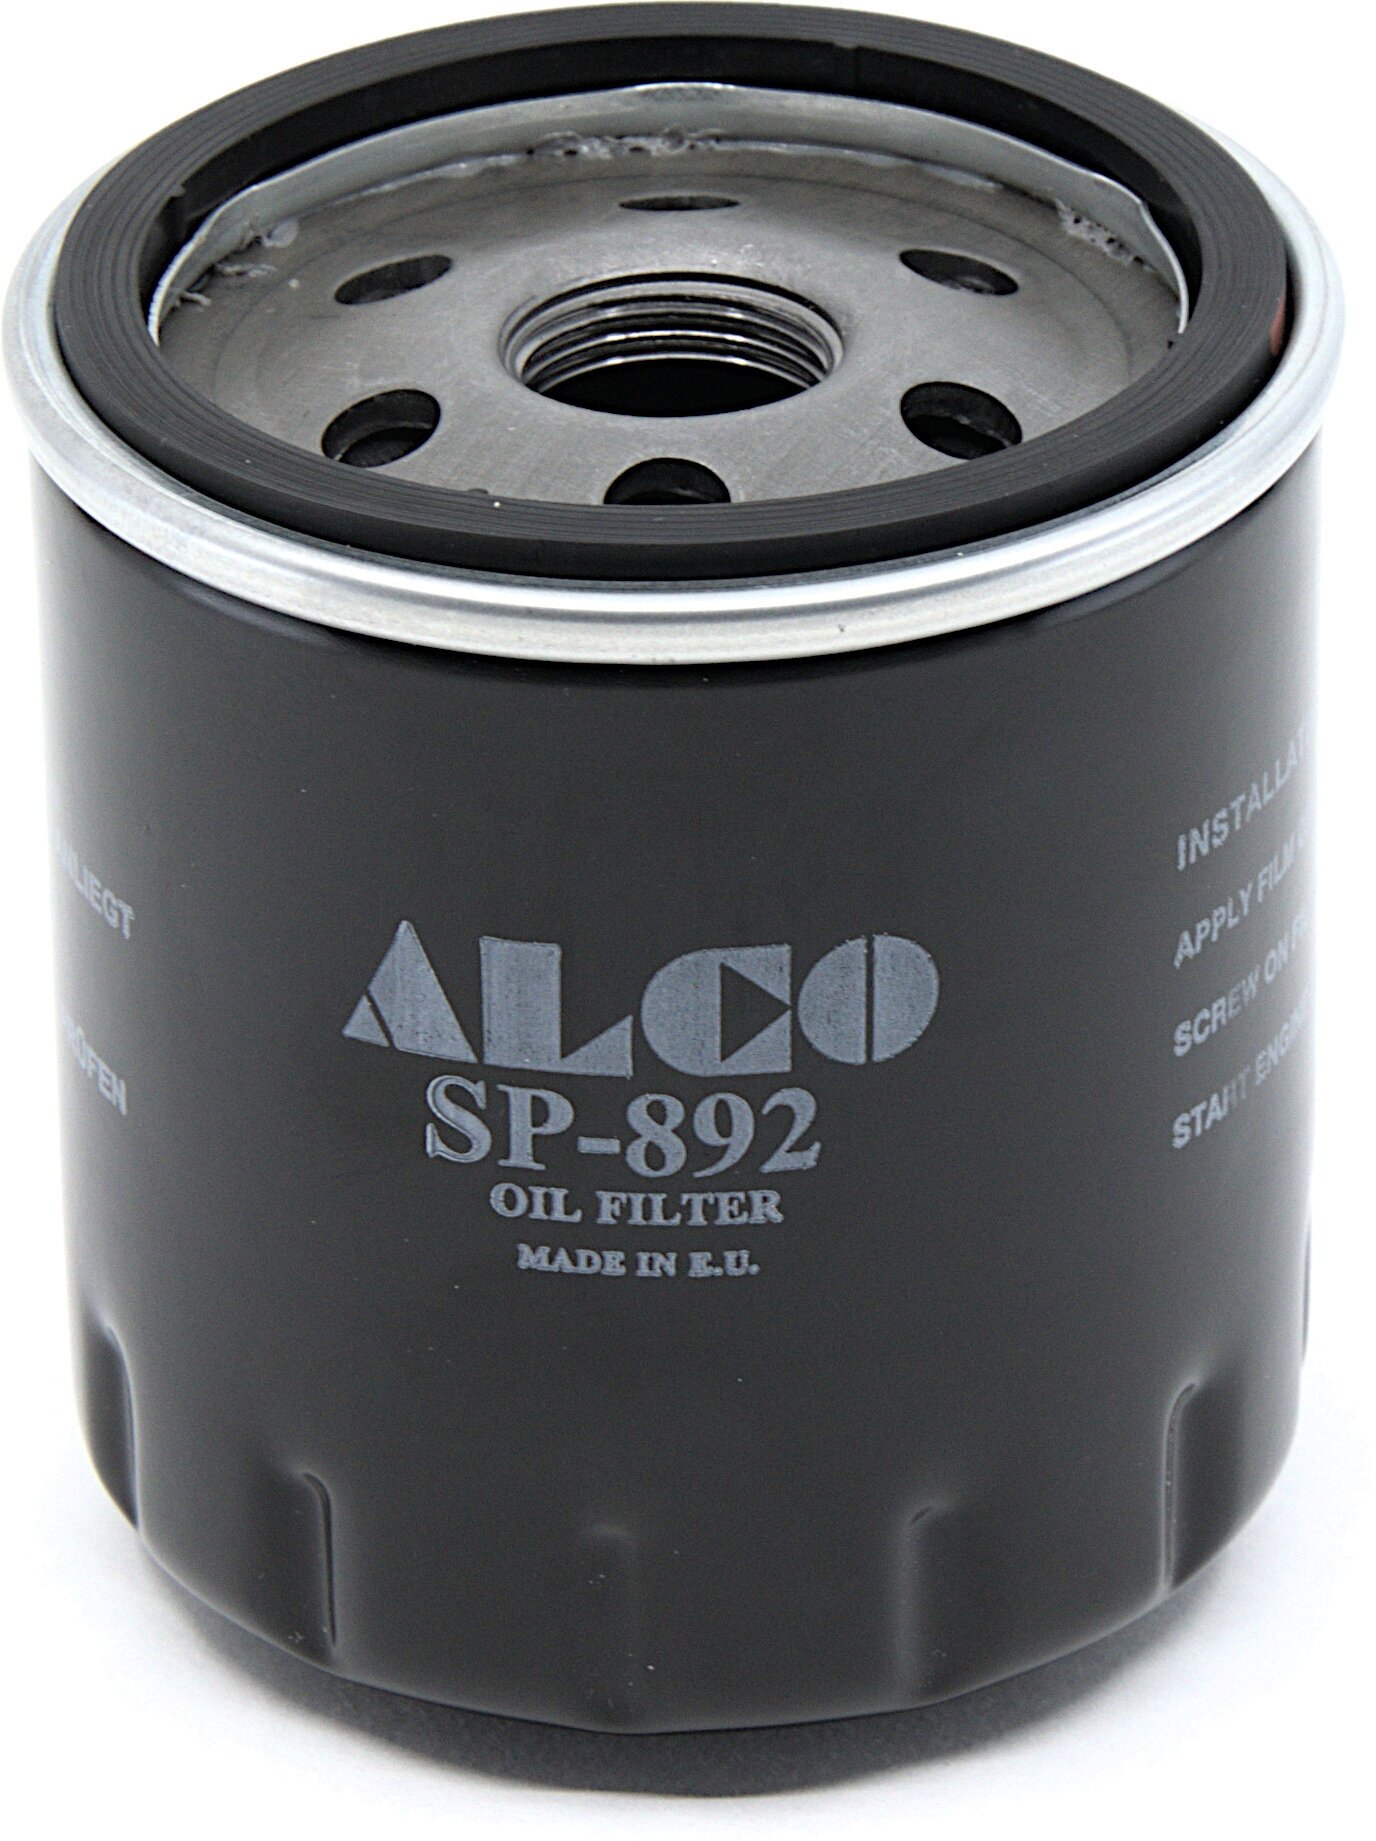 Фильтр масляный ALCO FILTER SP-892 для Fiat Croma; Ford Escort IV Fiesta III; Jeep Wrangler III